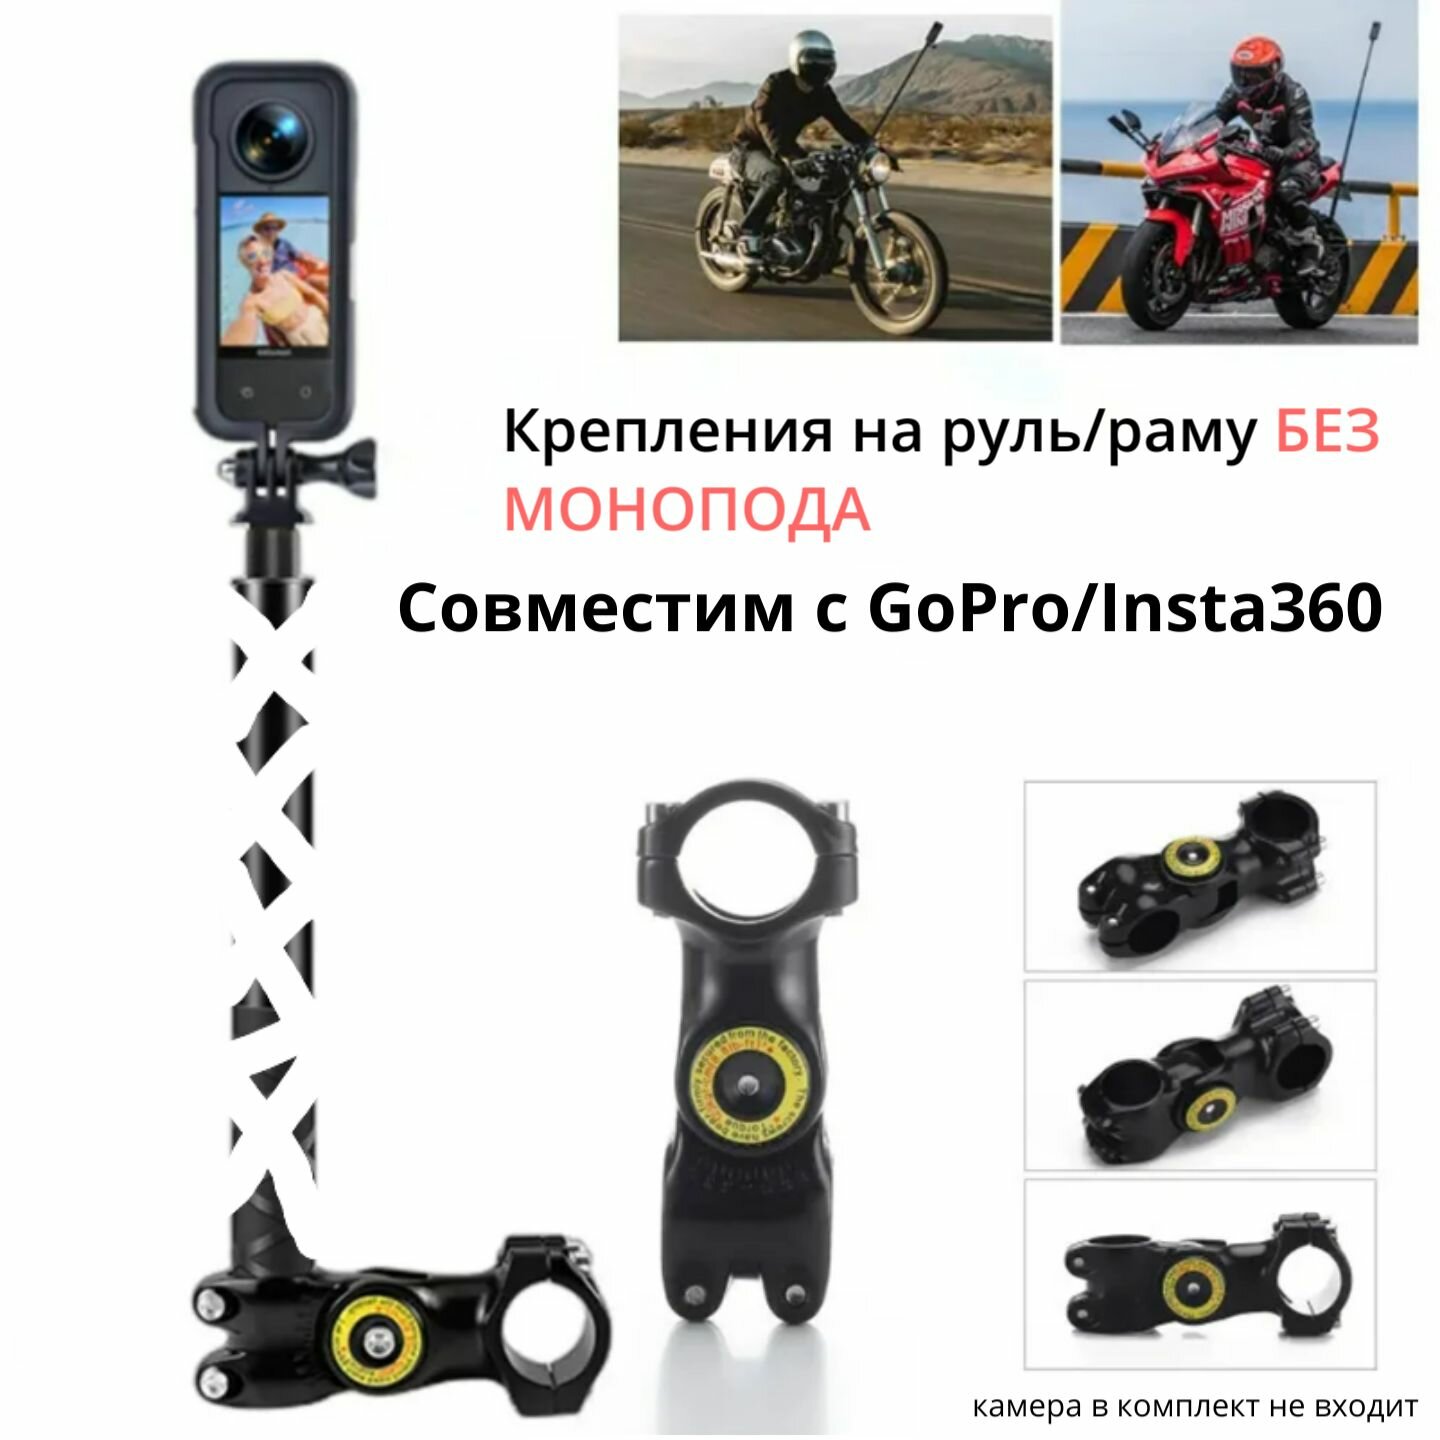 Крепления на руль или раму (Без монопода) Moto Pipe Clamp велосипед/мотоцикл Insta360/GoPro